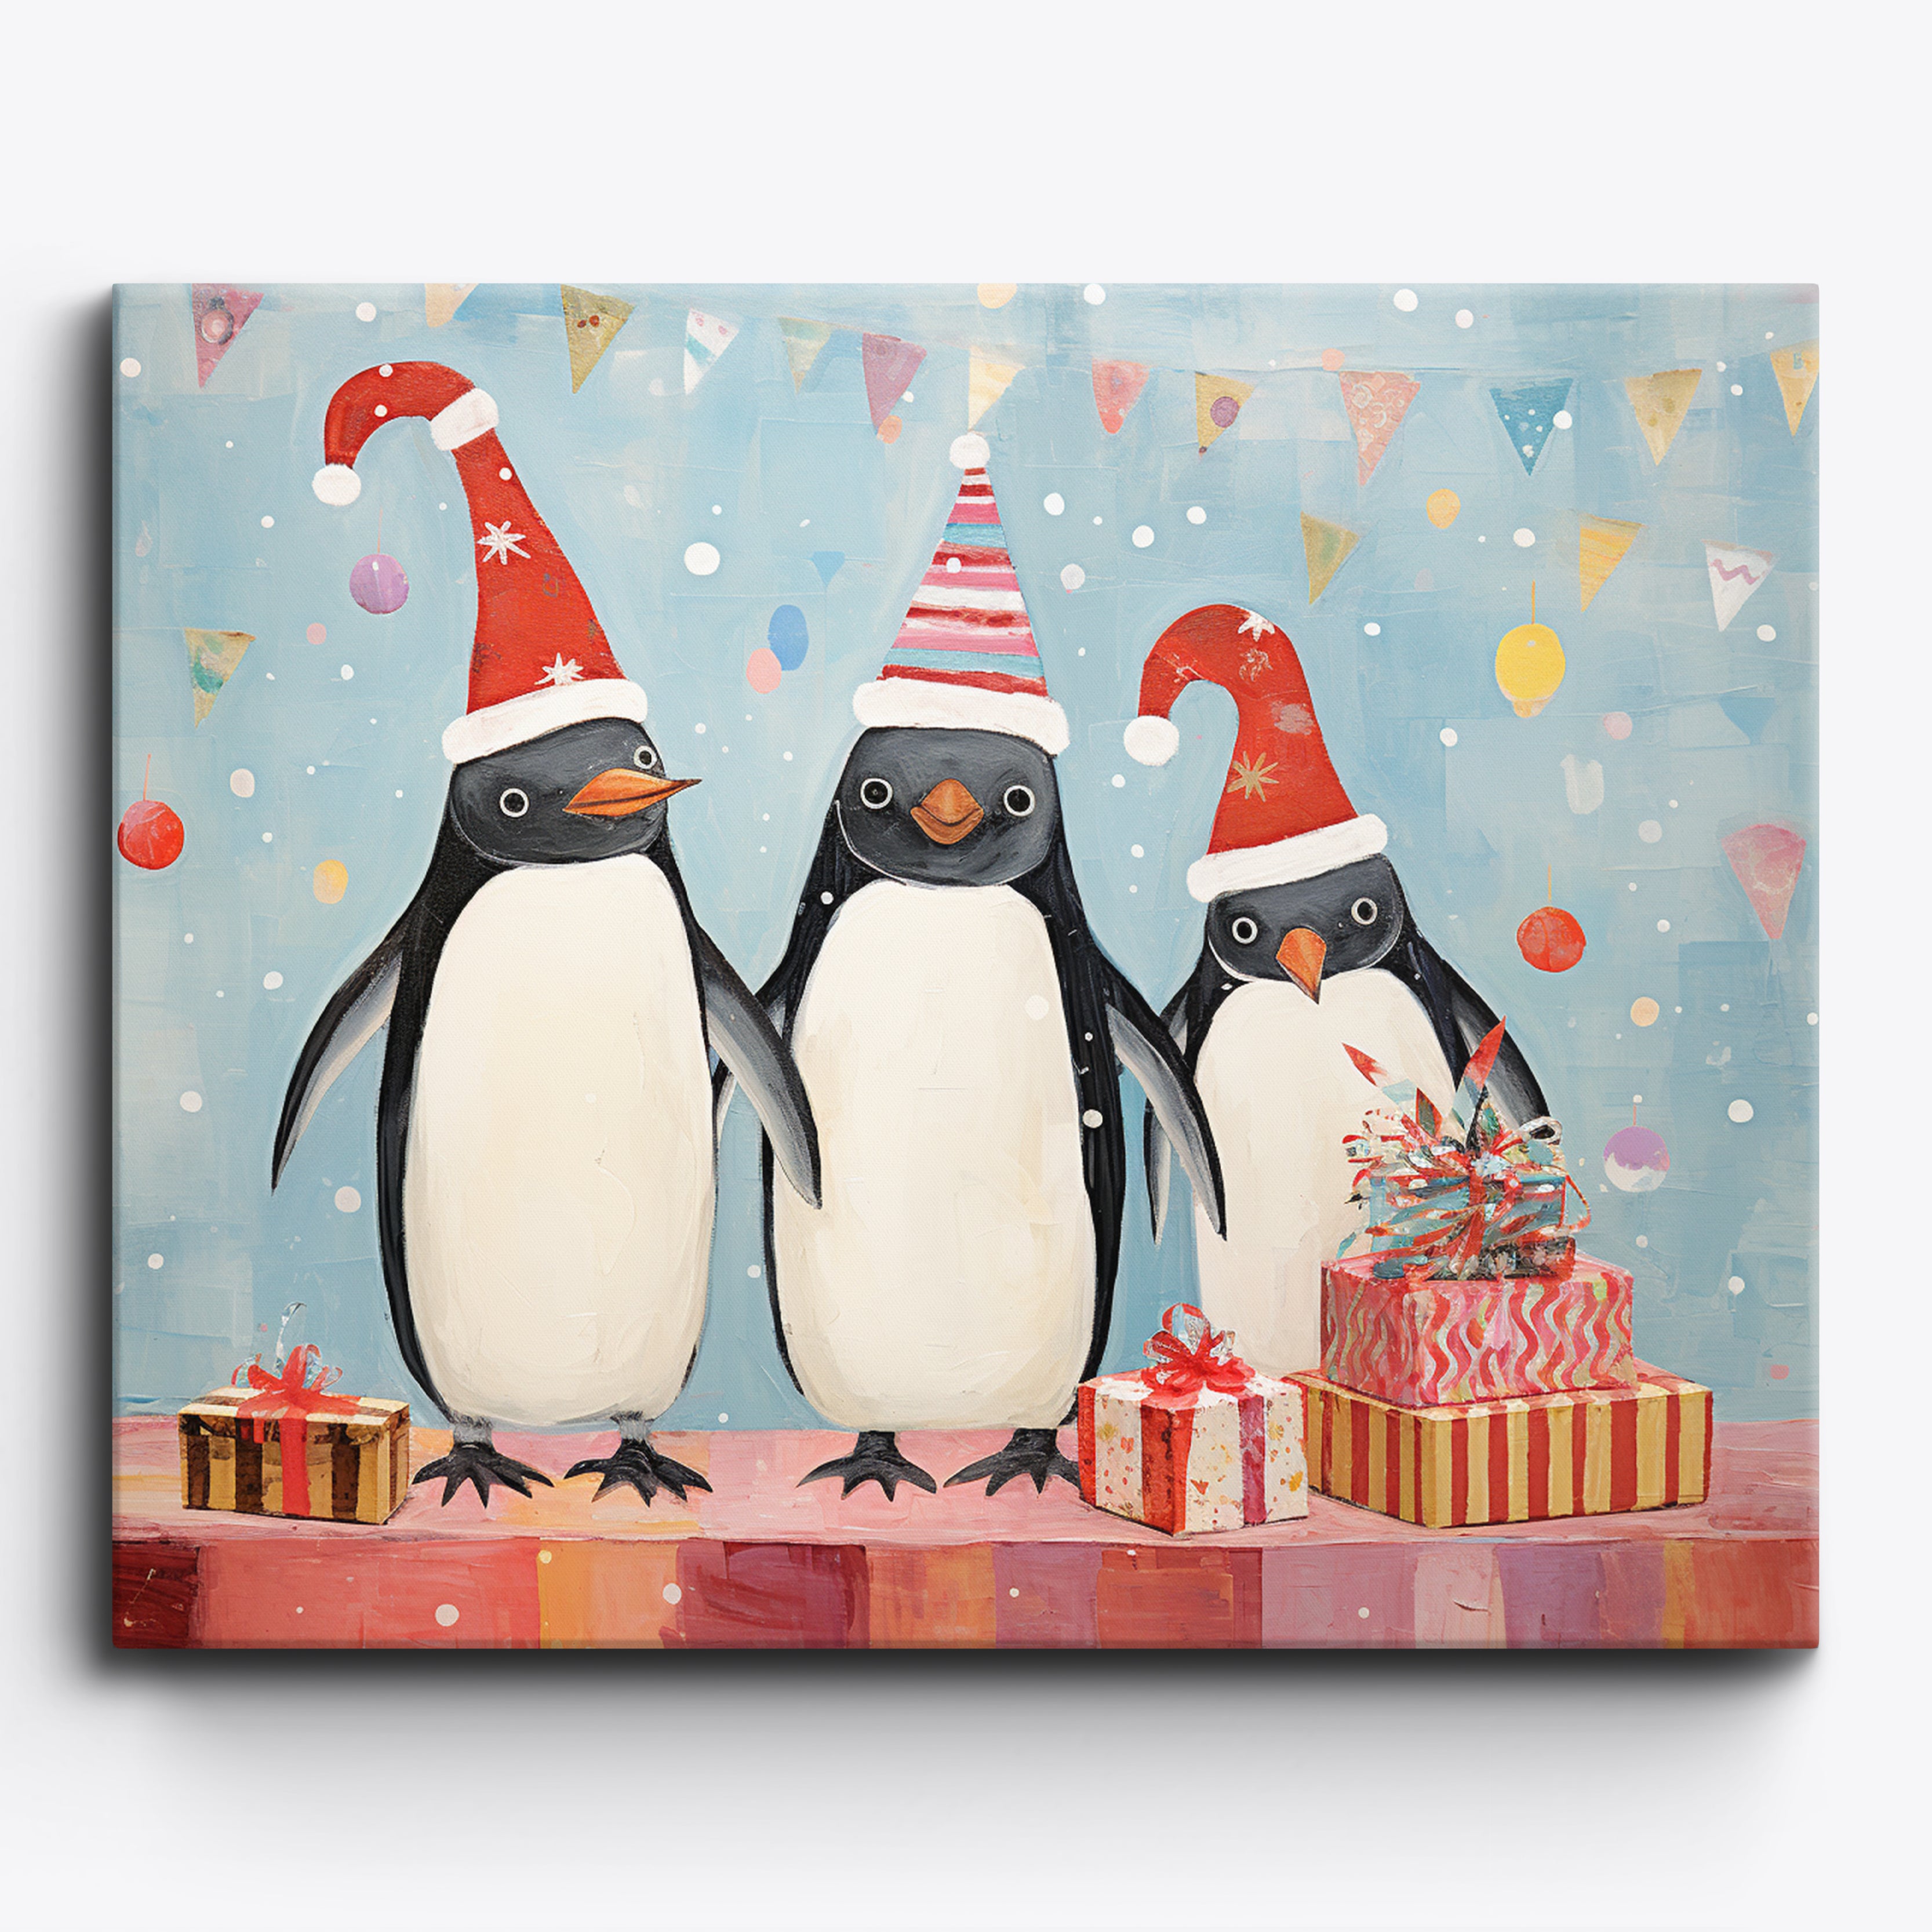 Zeer feestelijke pinguïns